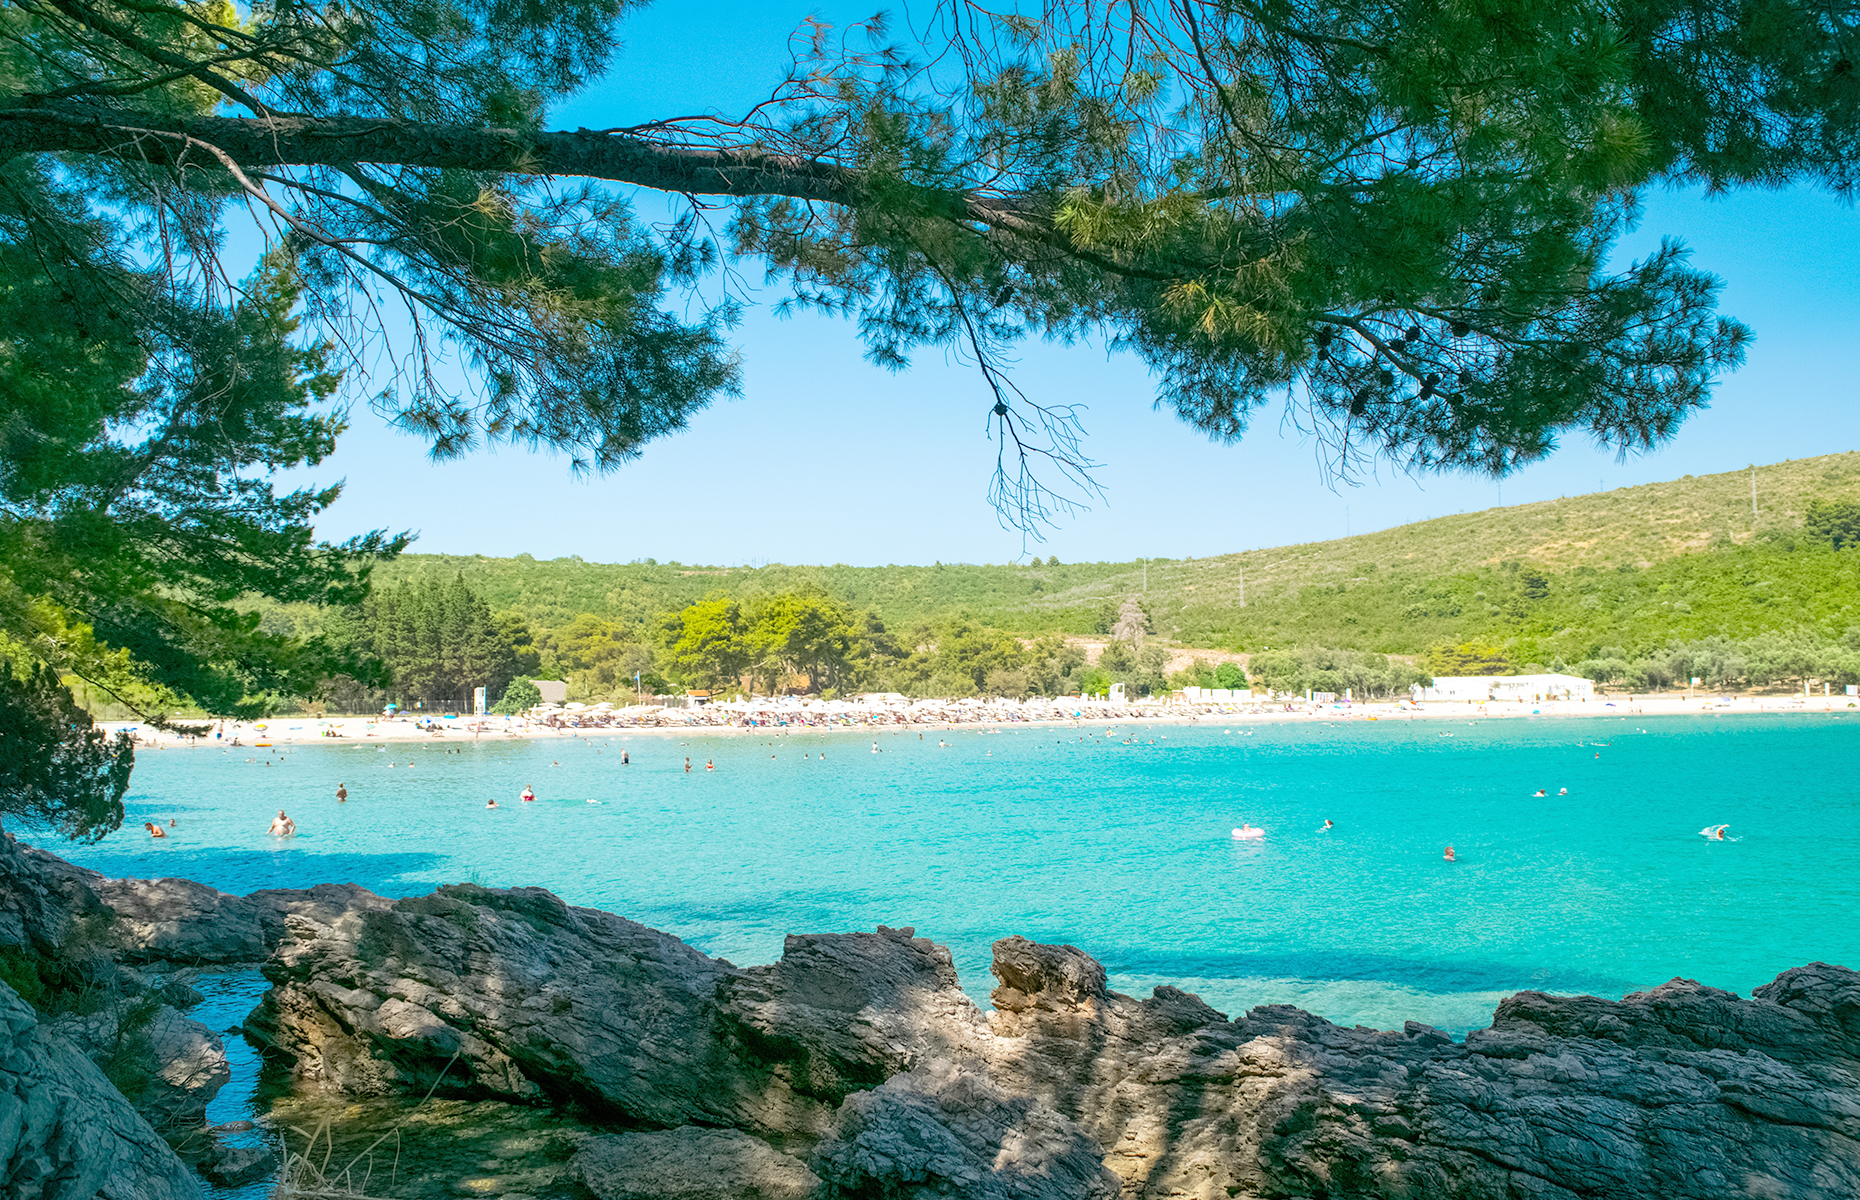 Plavi Horizonti beach, Montenegro. (Image: carmina/Shutterstock)